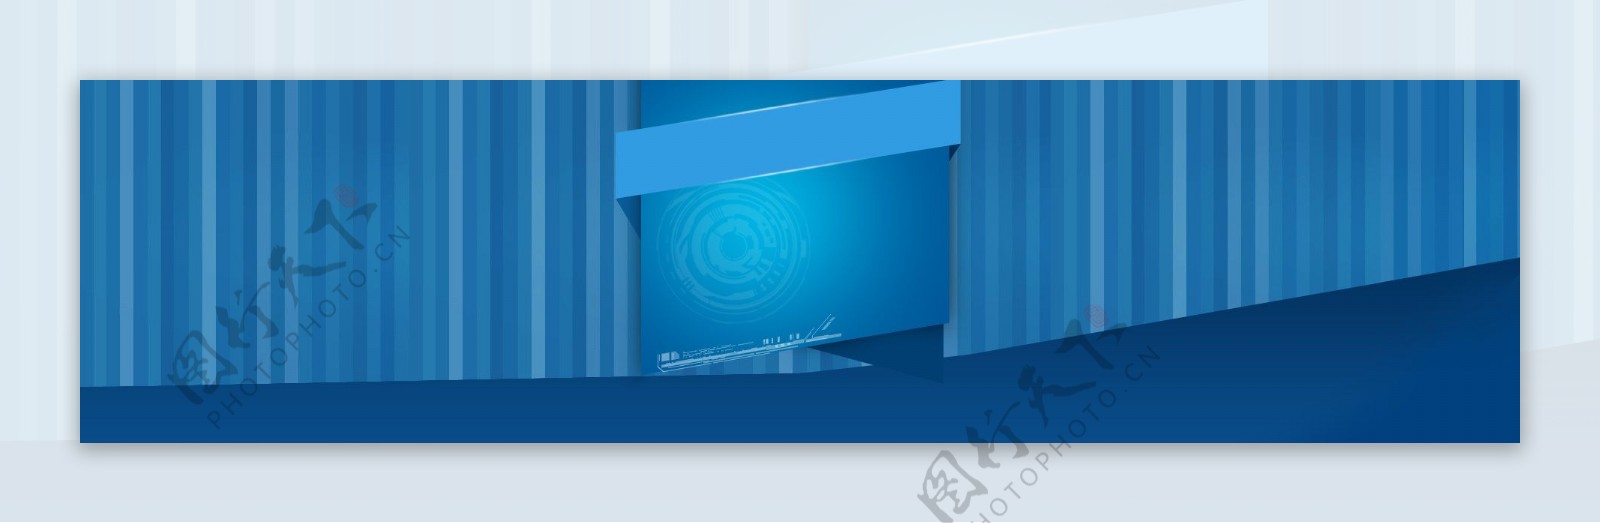 蓝色科技背景banner